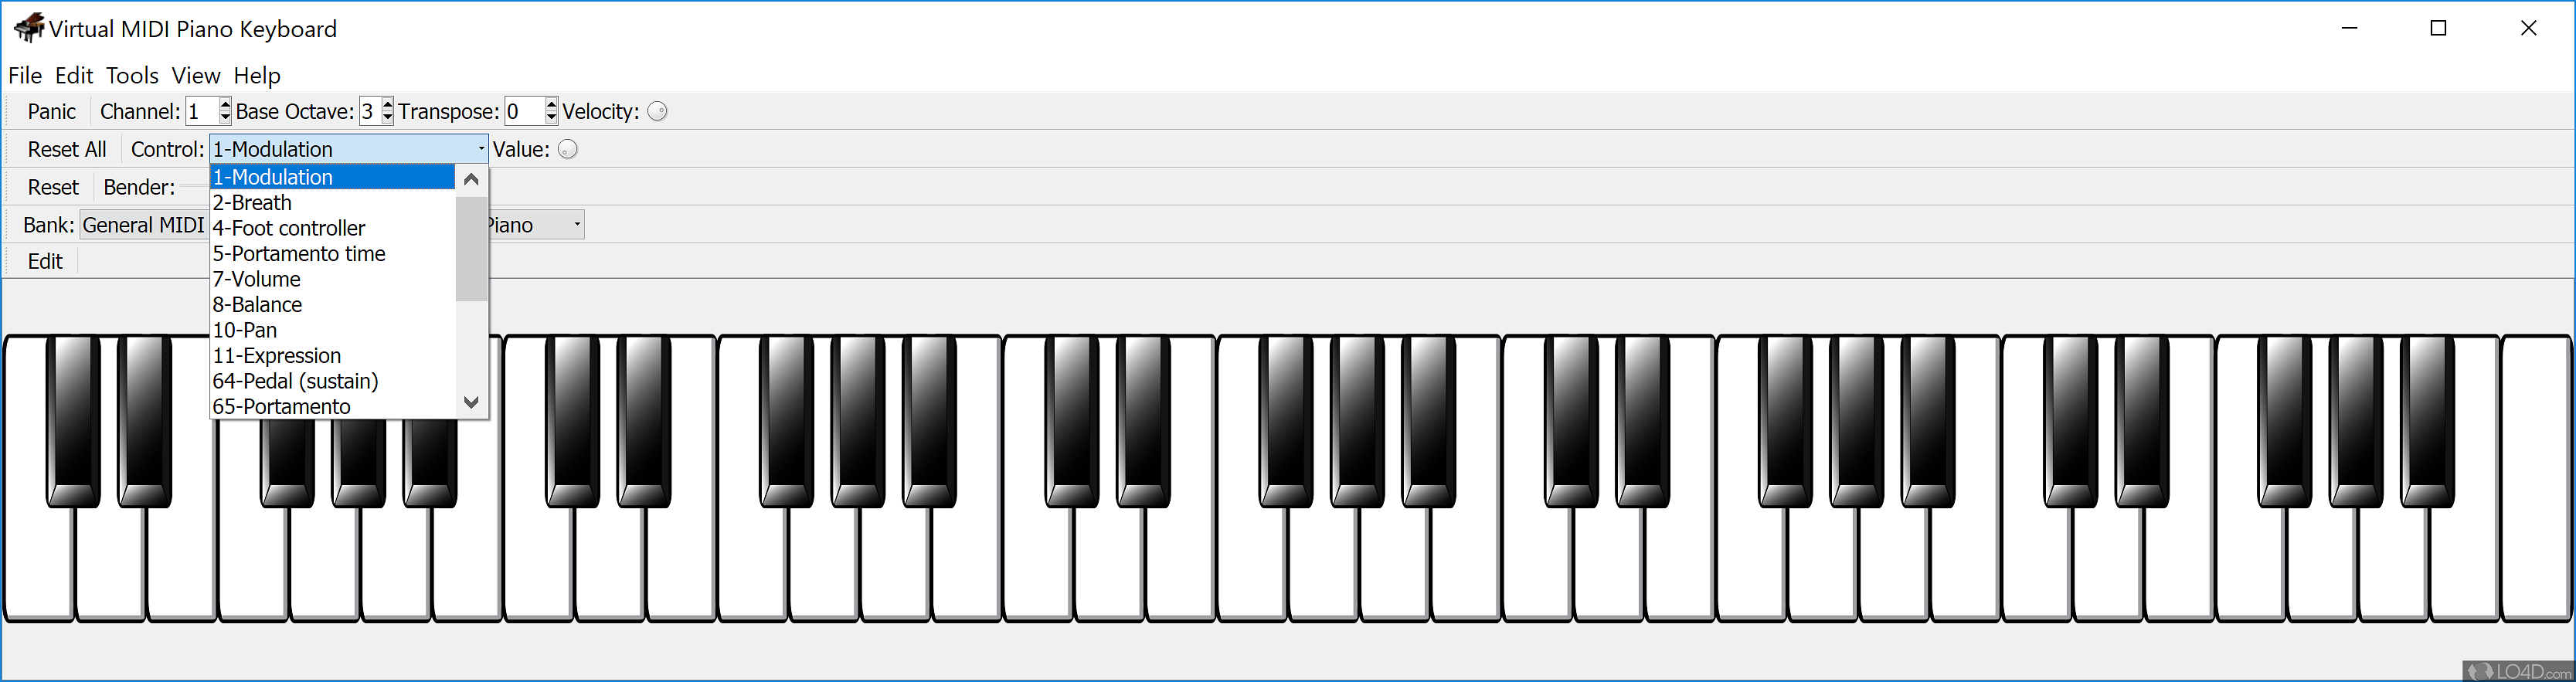 Клавиши фортепиано играть. Клавиатура Piano Midi. Миди пианино samcom. Virtual Midi Piano Keyboard. Midi клавиатура 3 октавы.